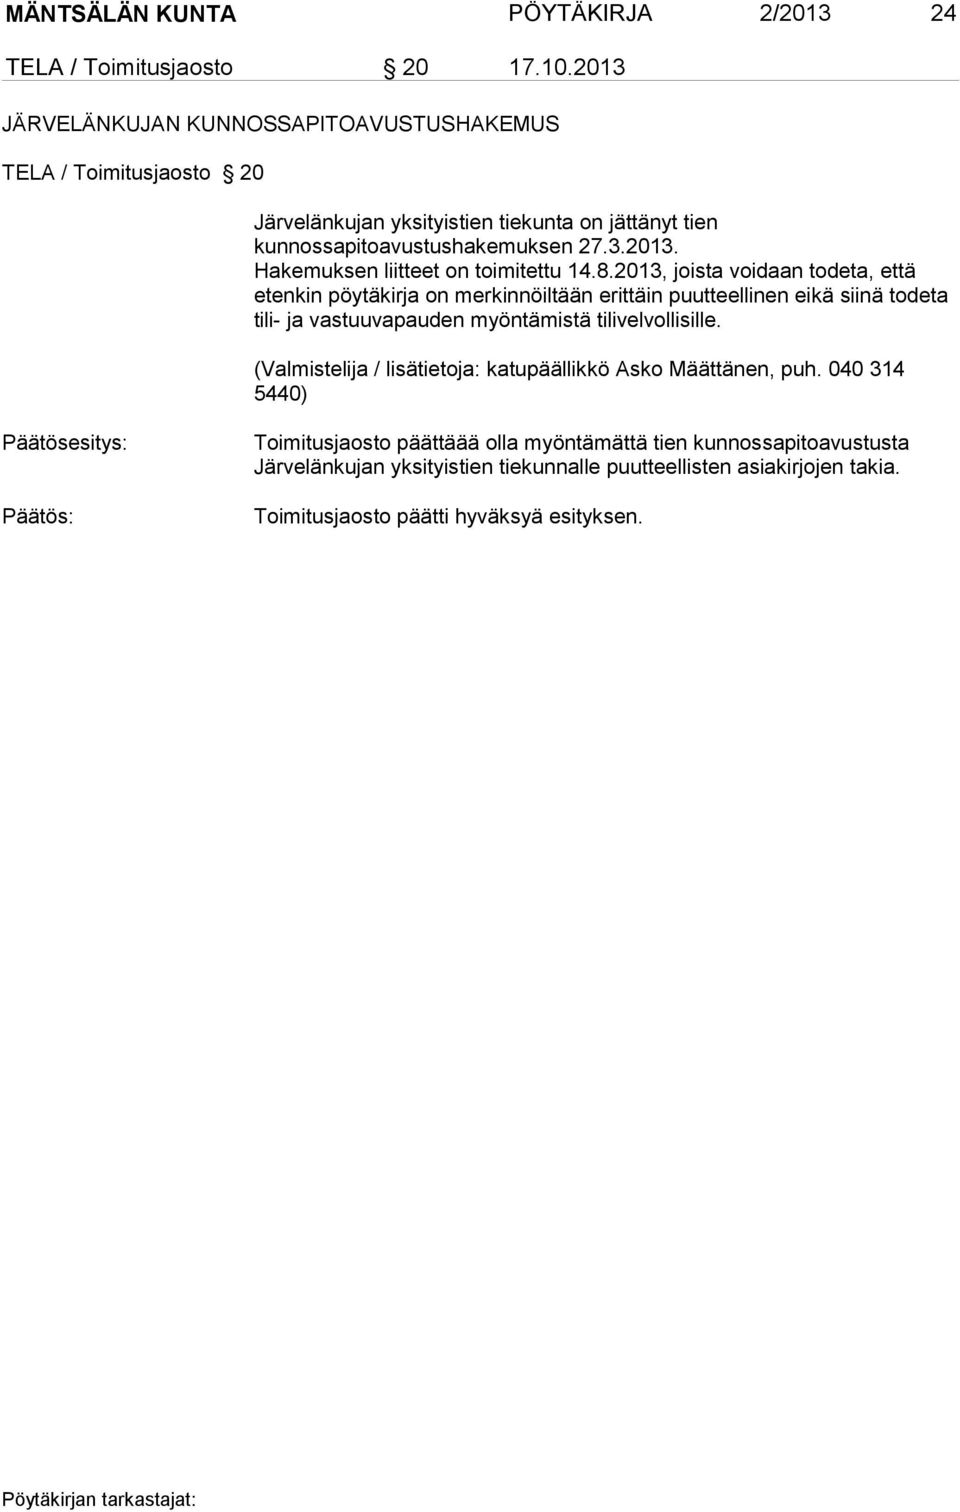 kunnossapitoavustushakemuksen 27.3.2013. Hakemuksen liitteet on toimitettu 14.8.